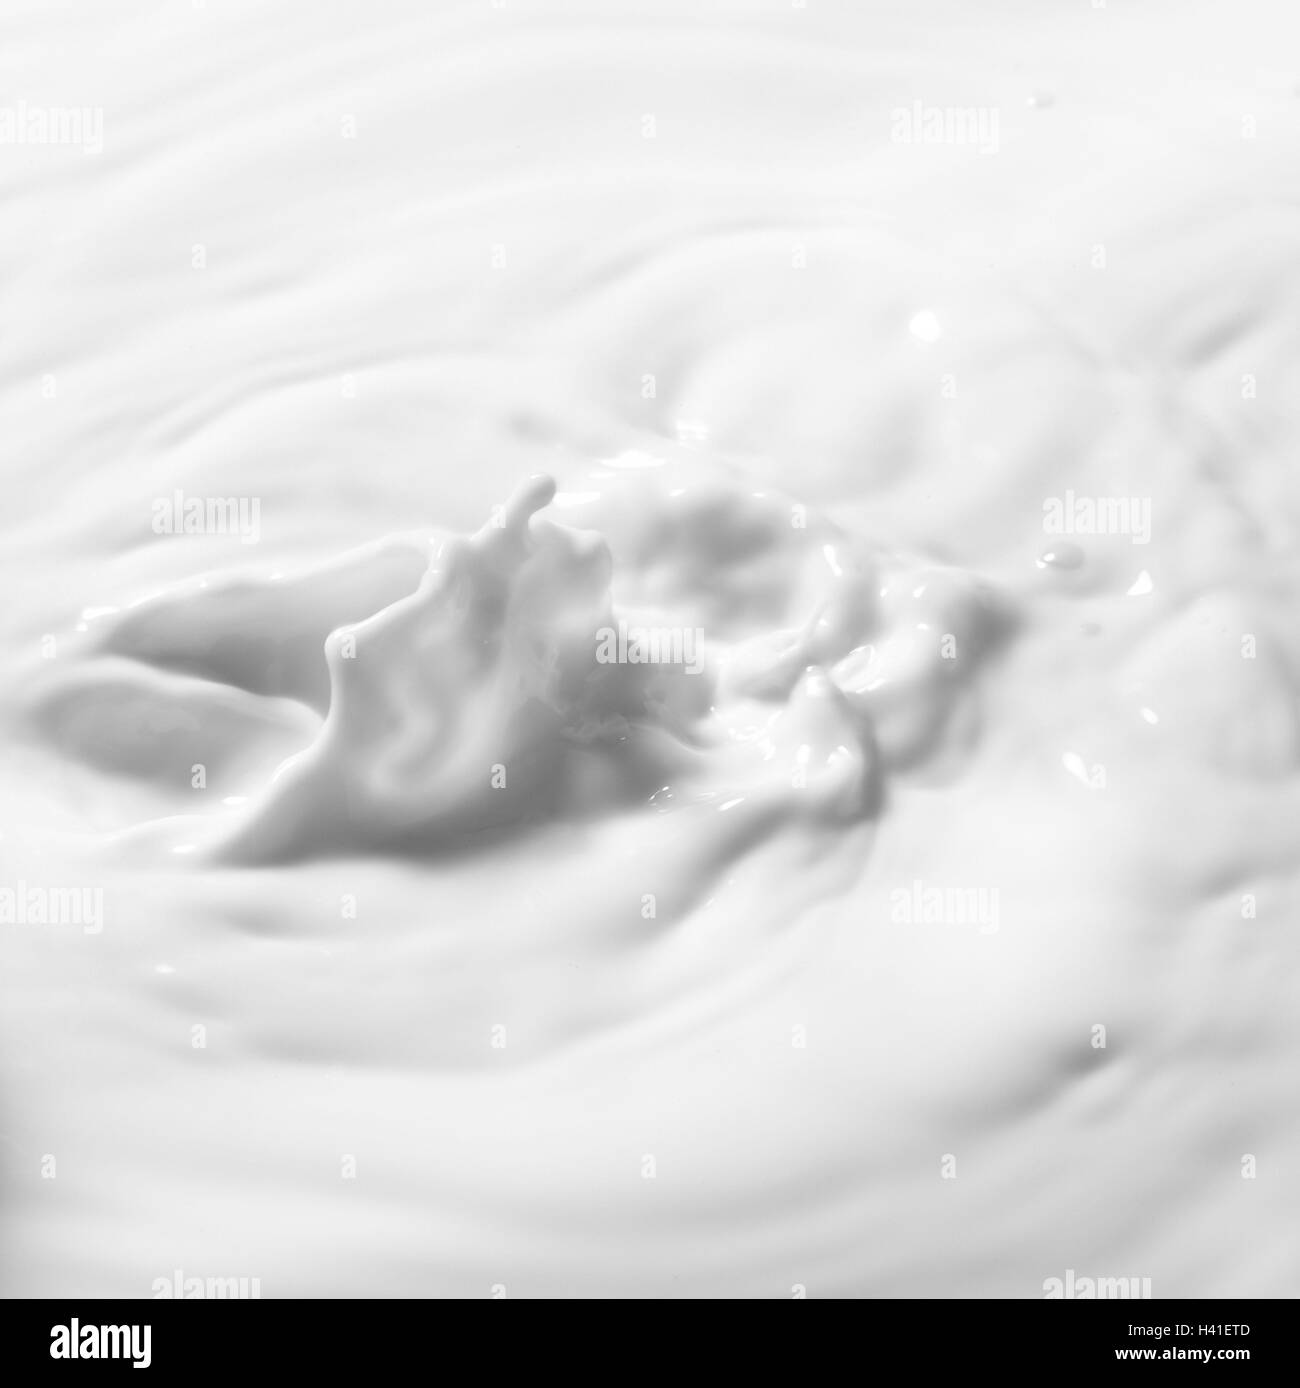 Milch, Oberfläche, bewegt sich Essen, trinken, gesund, natürlich, flüssig, weiße, gesunde Ernährung, flüssig, motion, Produktfotografie Stockfoto